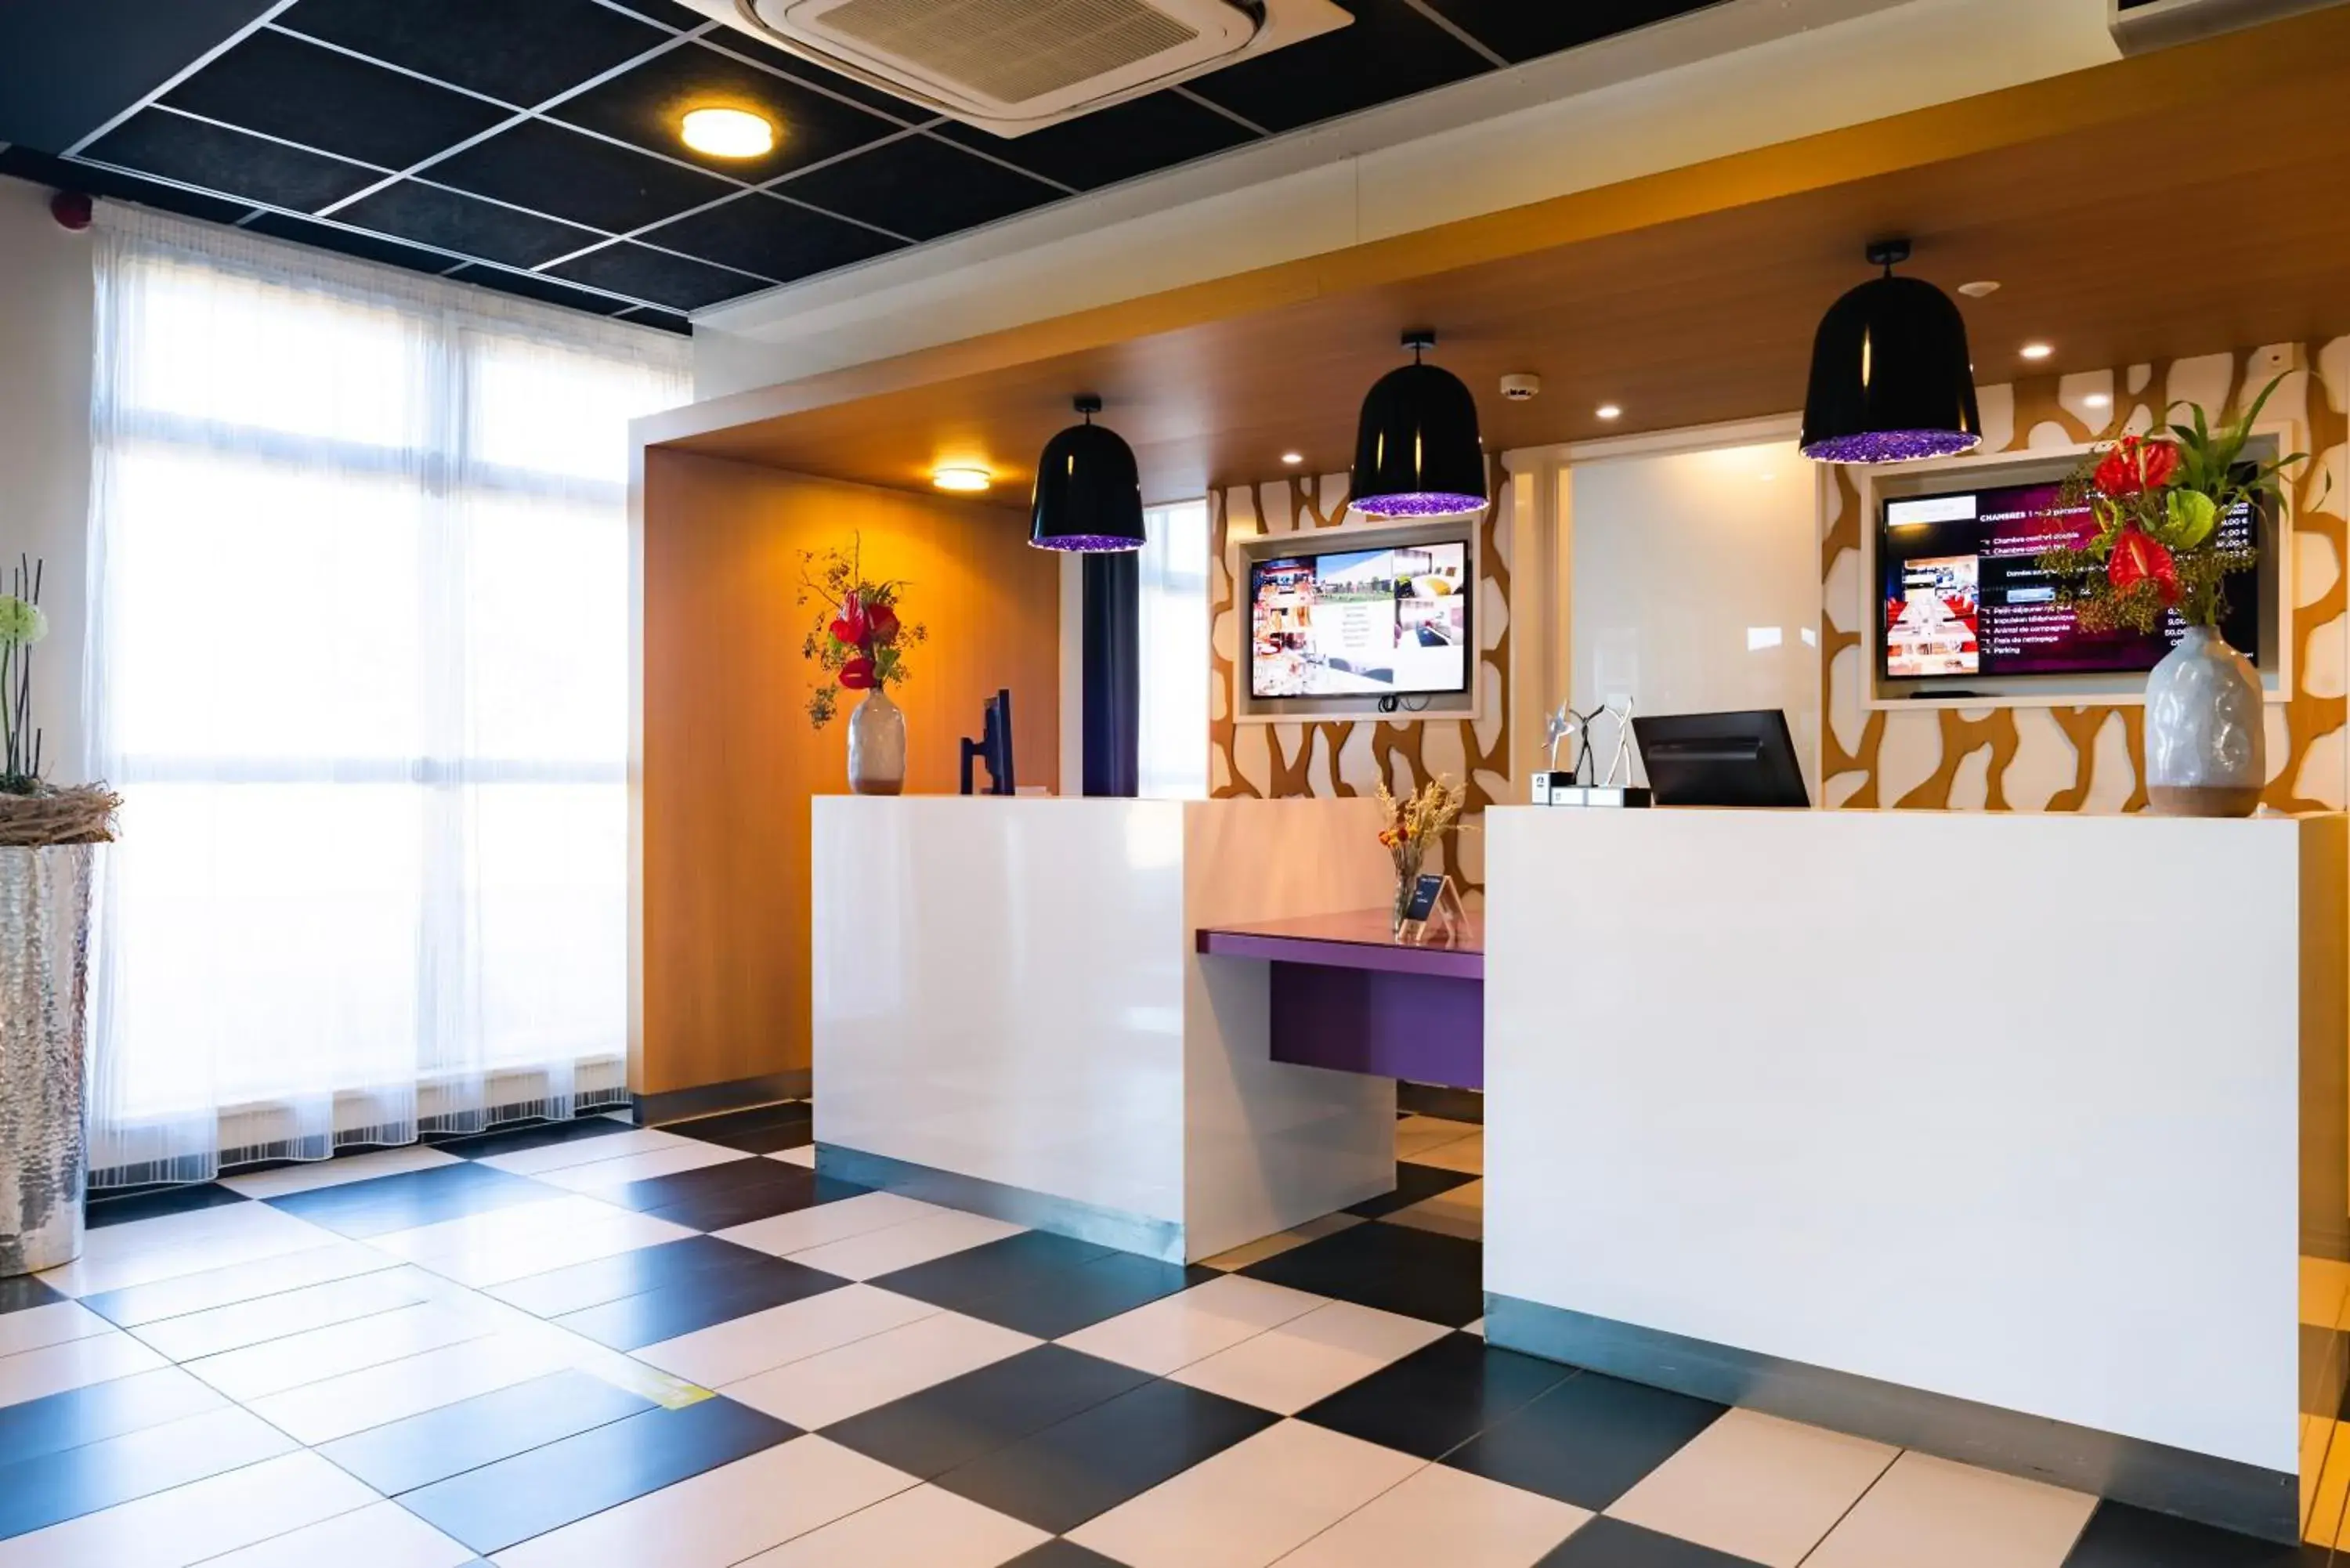 Lobby or reception, Lobby/Reception in Best Western Plus Hotel Le Rhenan